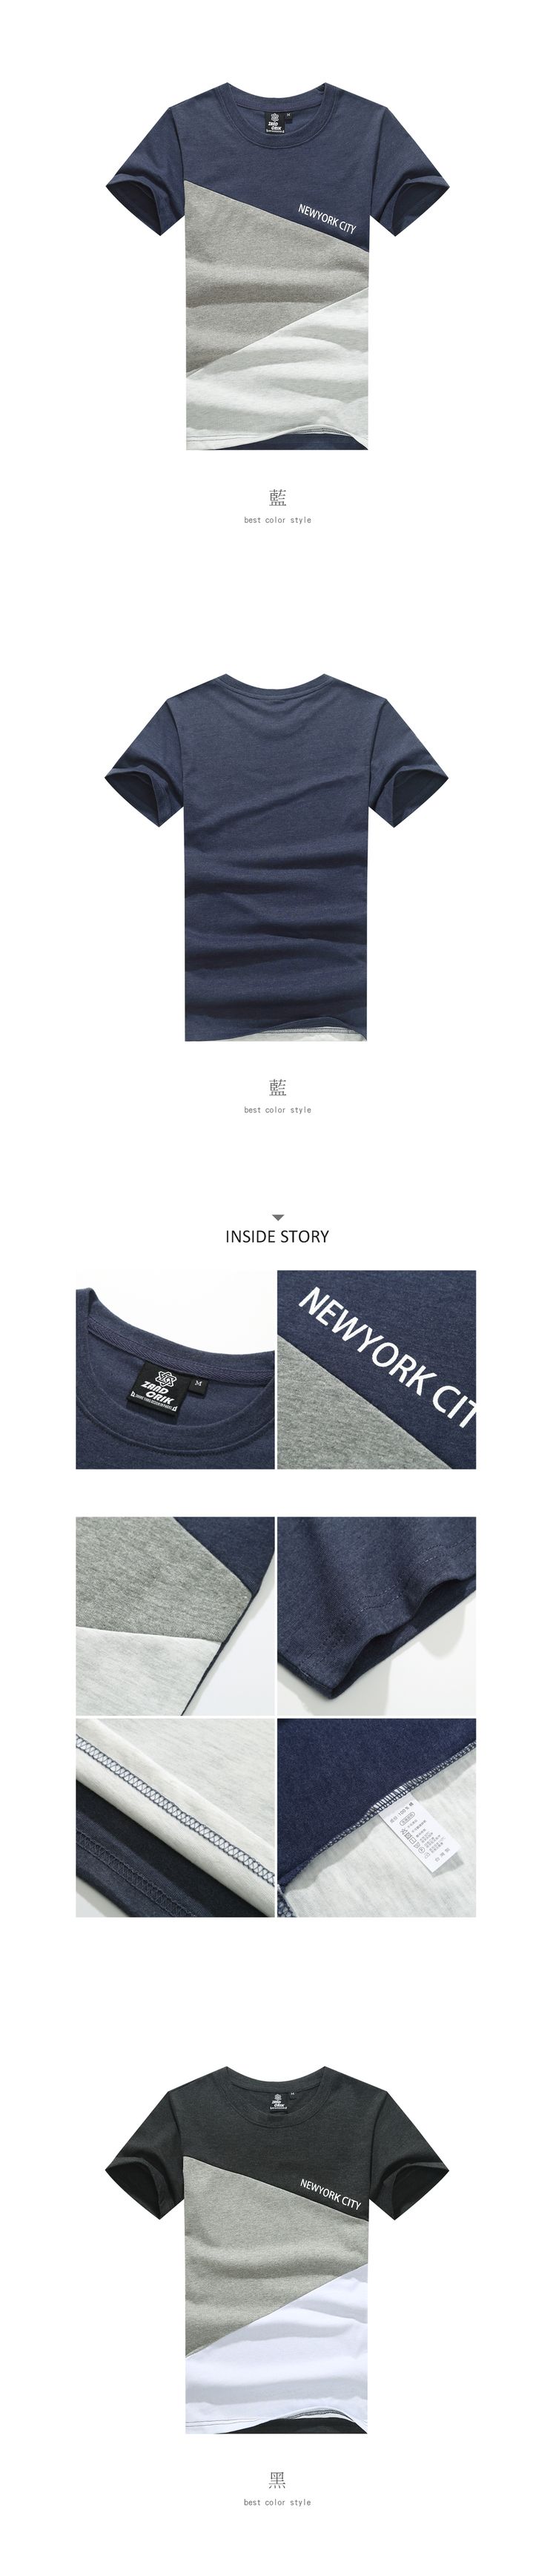 NEWYORK CITY．三角拼接設計圓領短袖T恤